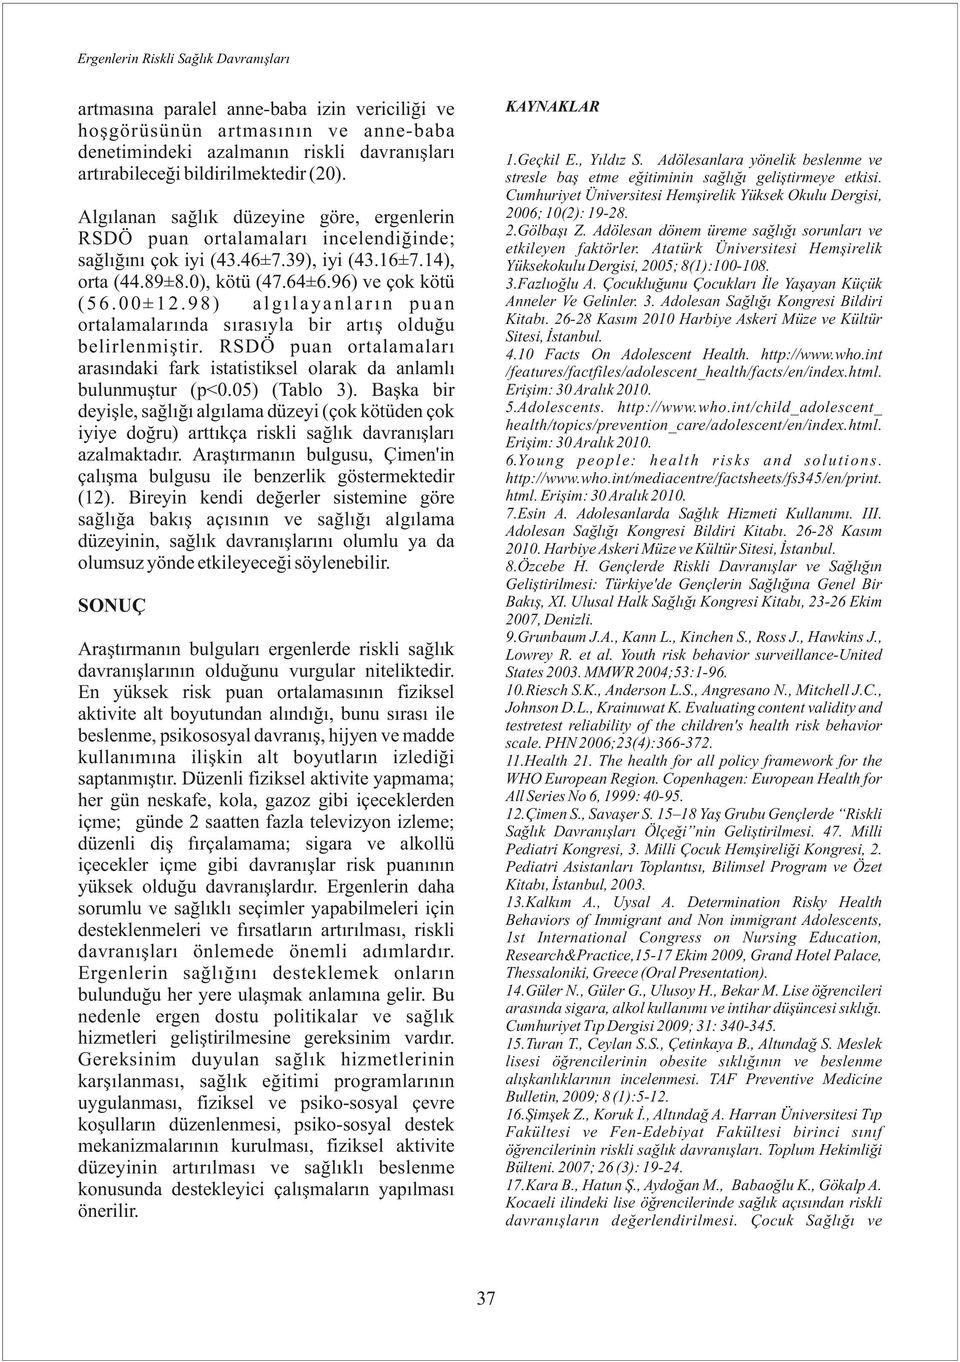 Adölesan dönem üreme sağlığı sorunları ve etkileyen faktörler. Atatürk Üniversitesi Hemşirelik Yüksekokulu Dergisi, 2005; 8(1):100-108. 3.Fazlıoğlu A.